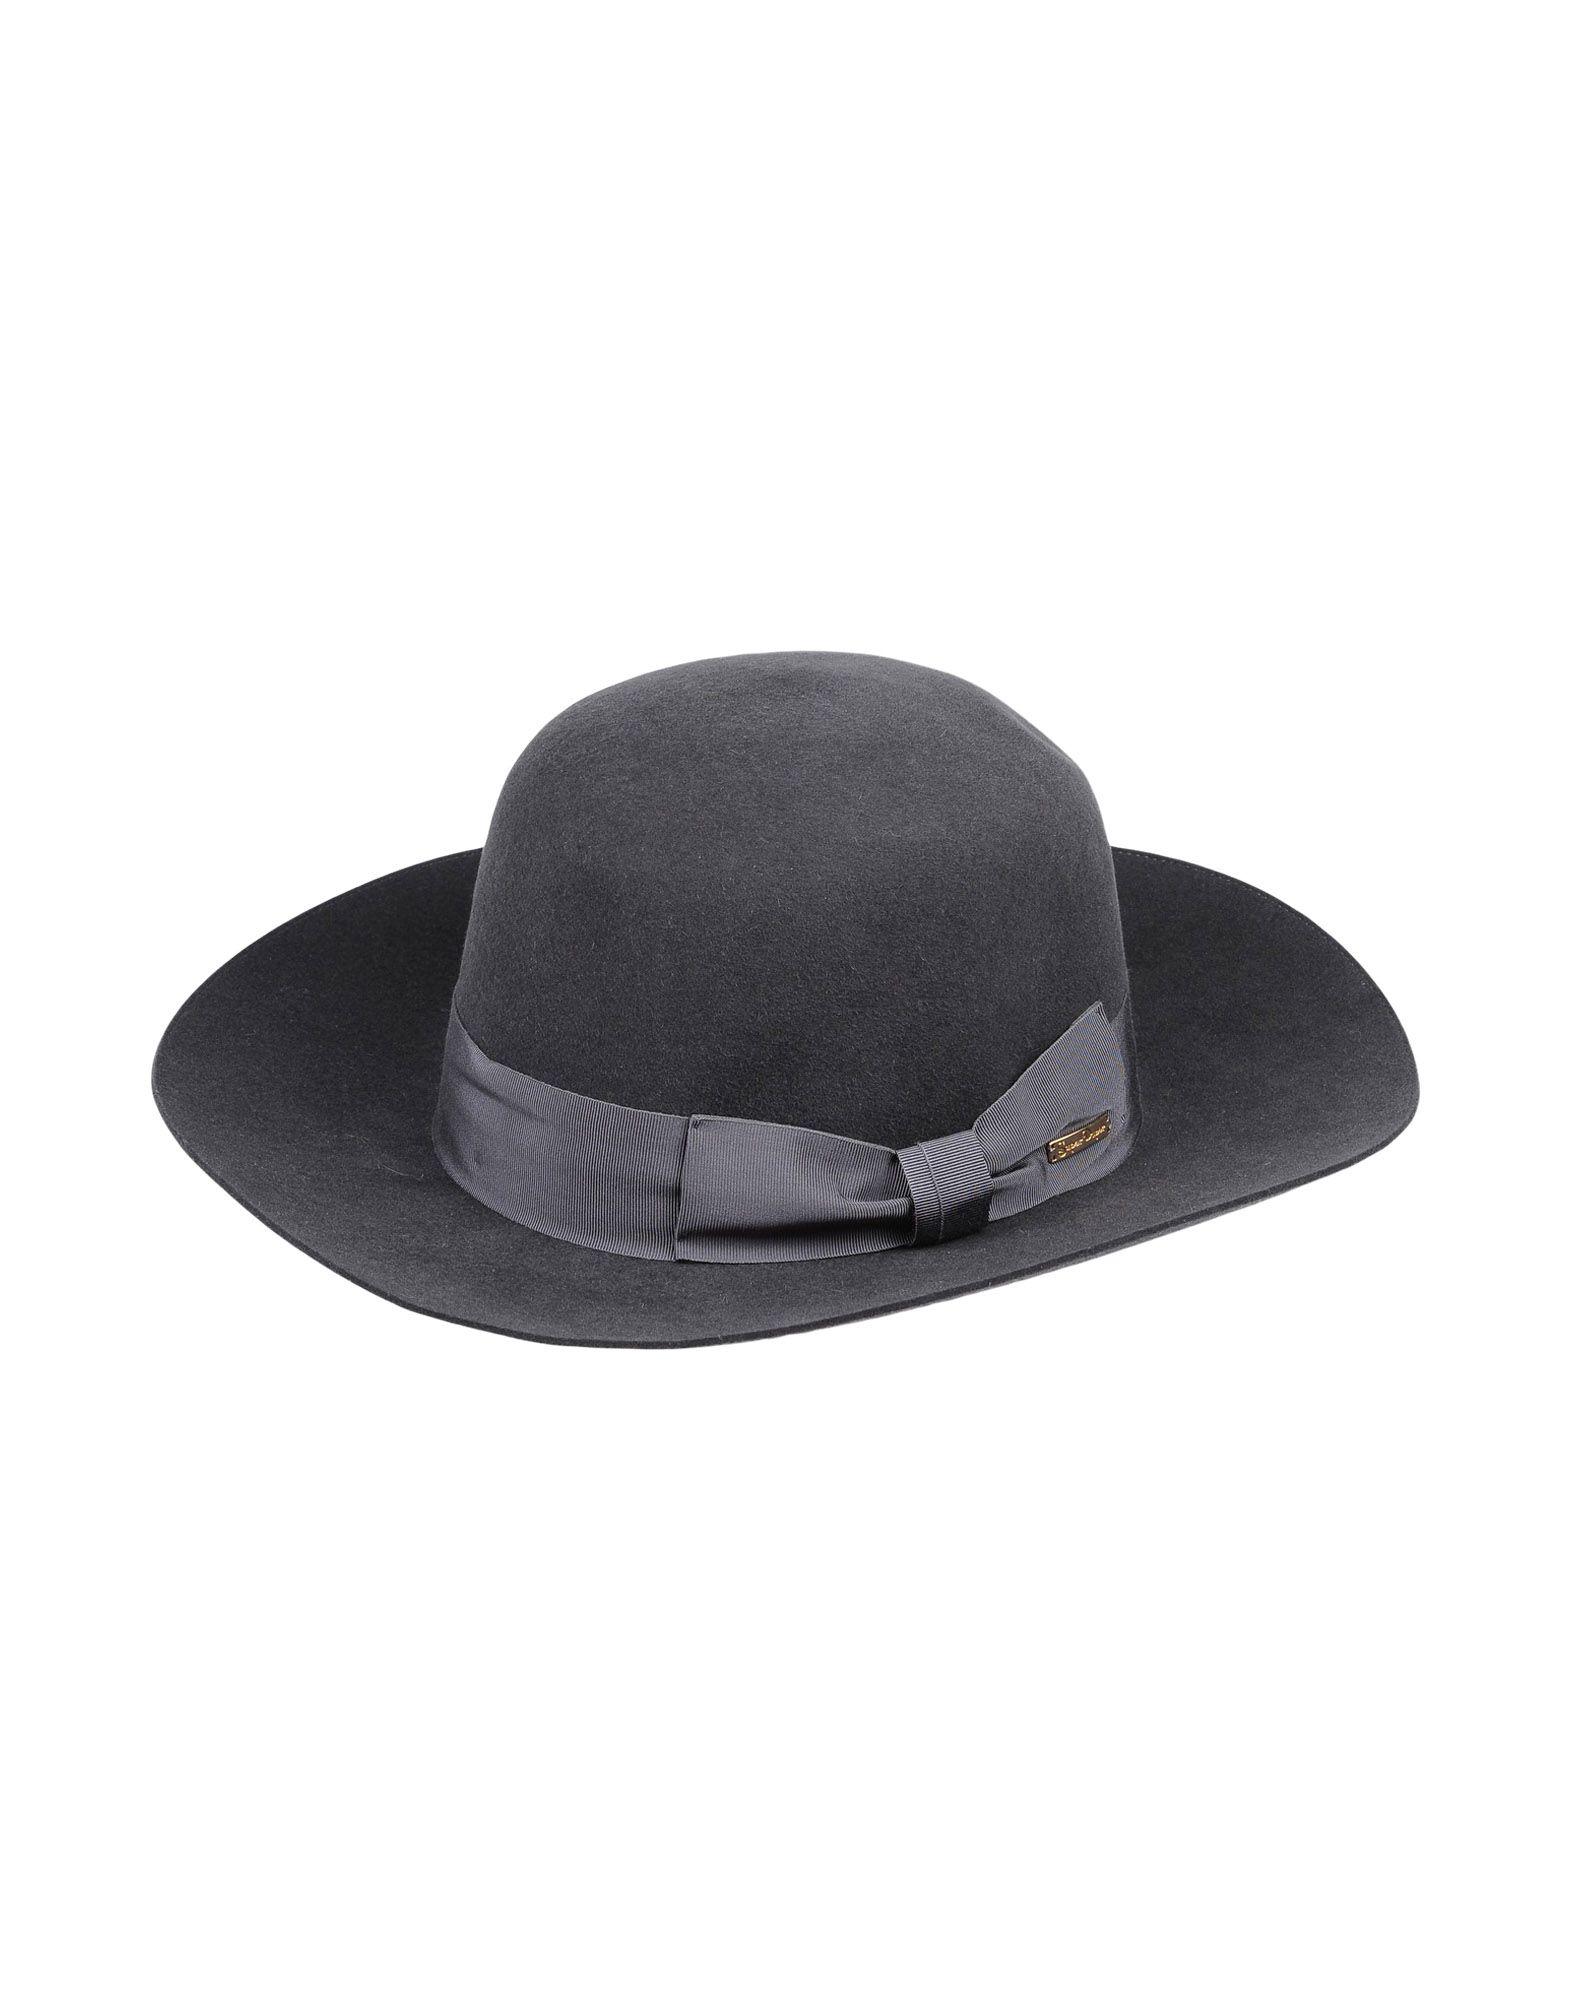 《送料無料》SUPER DUPER HATS レディース 帽子 鉛色 56 紡績繊維